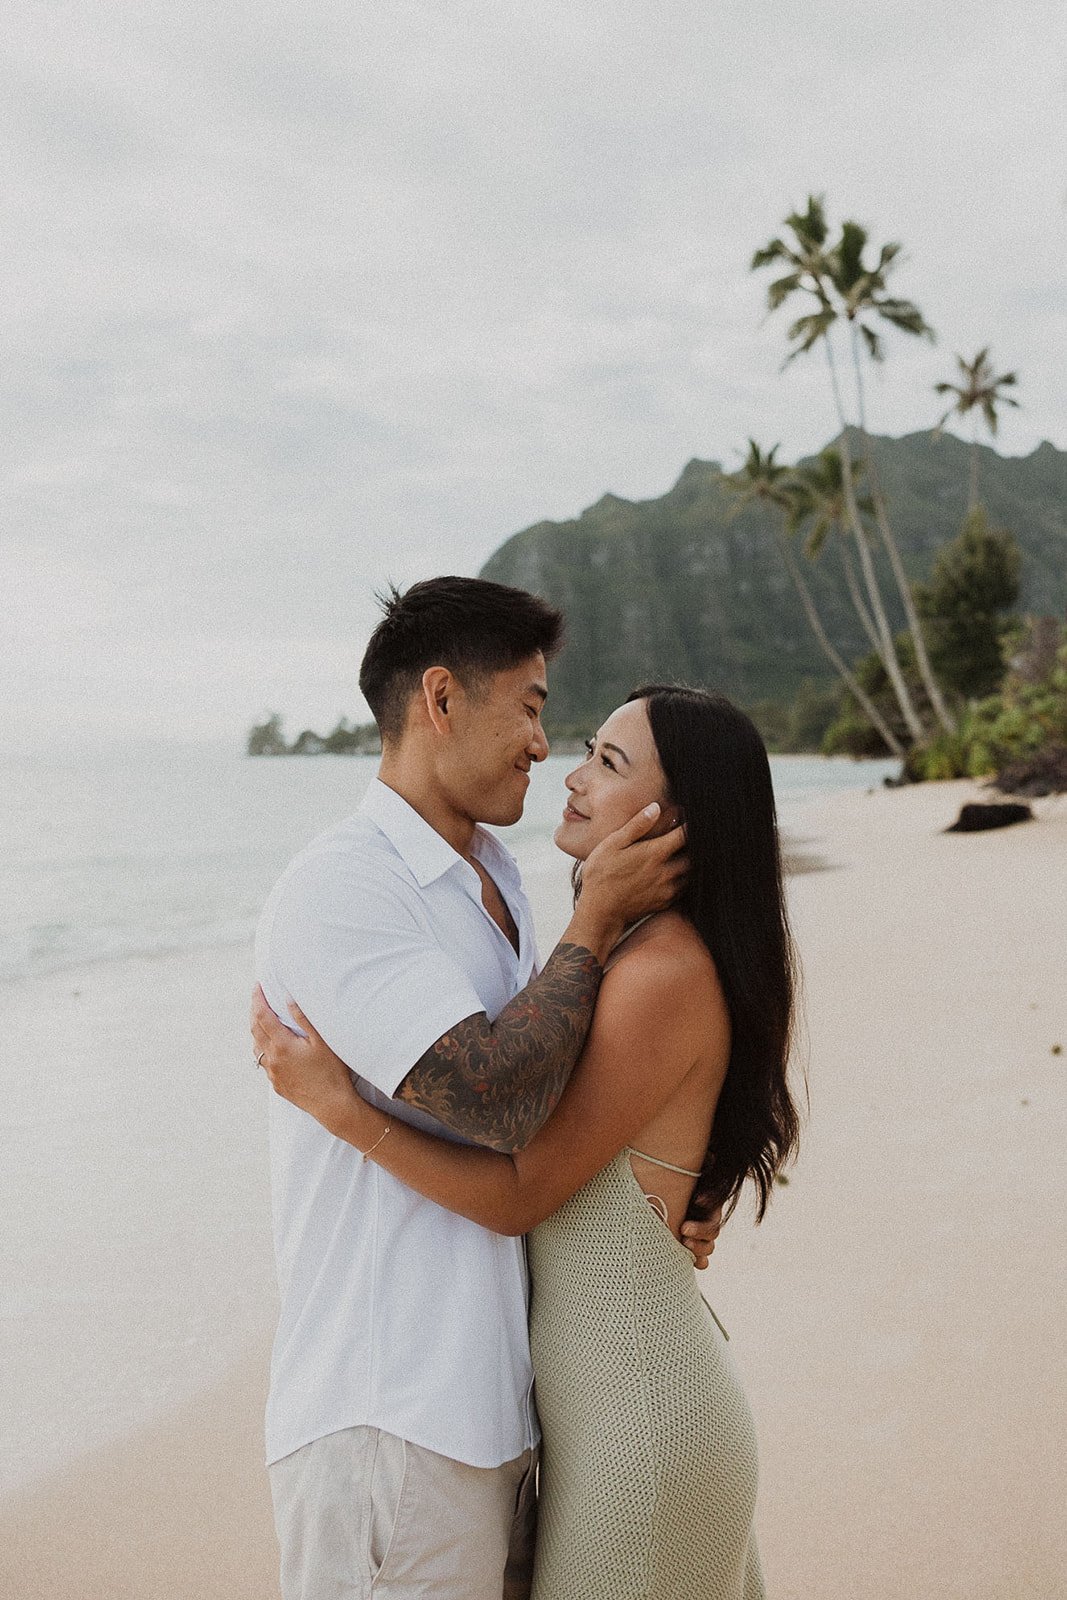 j-t-kualoa-hawaii-couples-session-8393.jpg